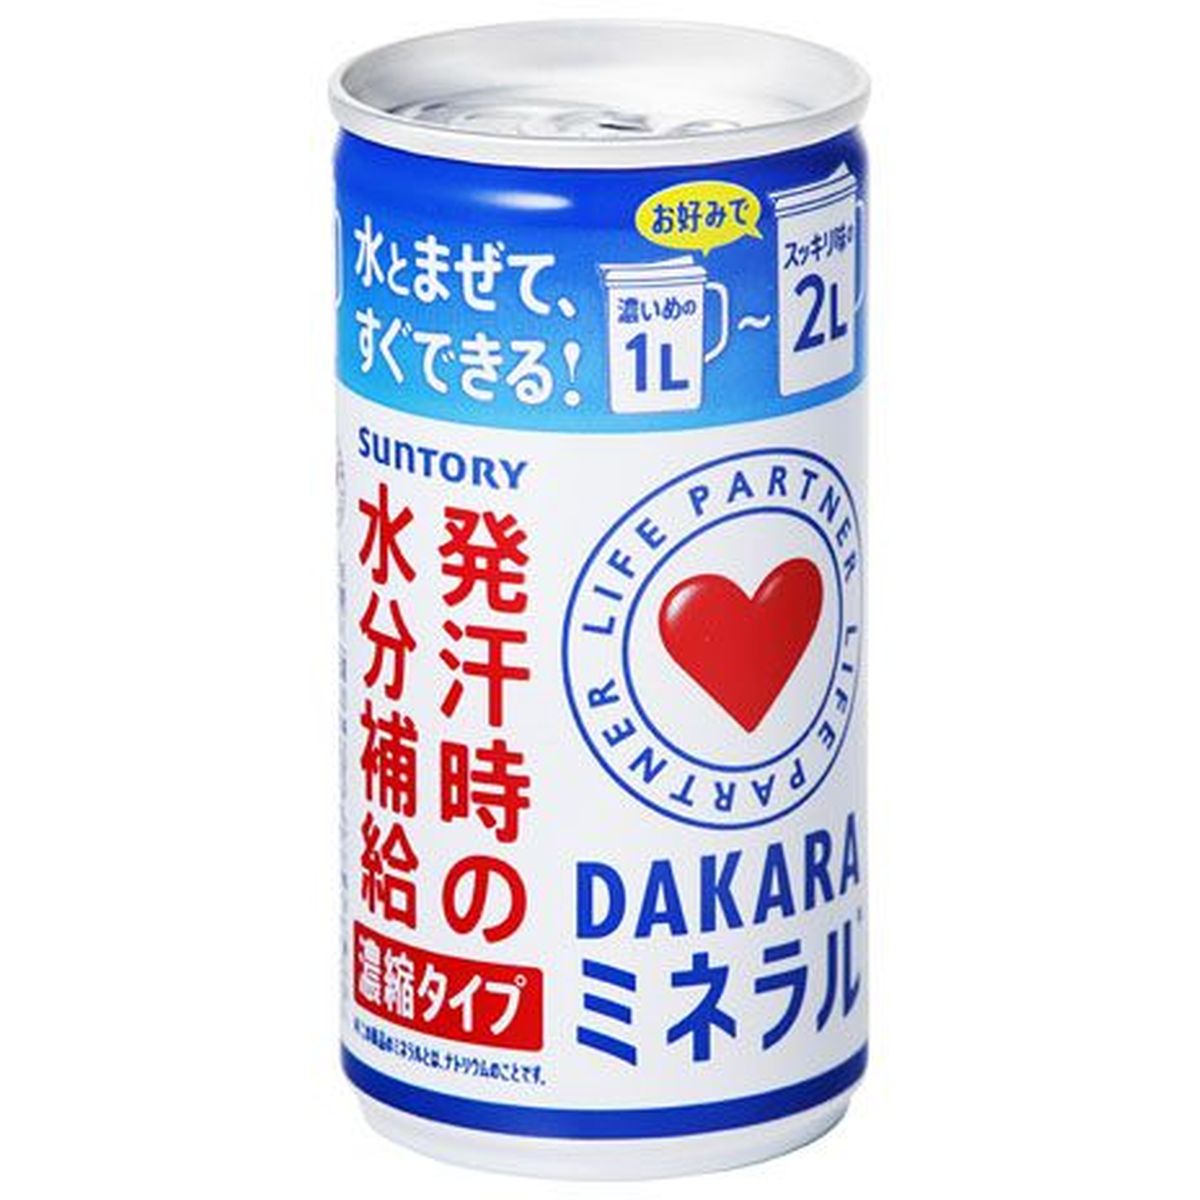 【30個入リ】サントリー ライフパートナーダカラ ミネラル濃縮タイプ 缶 195g